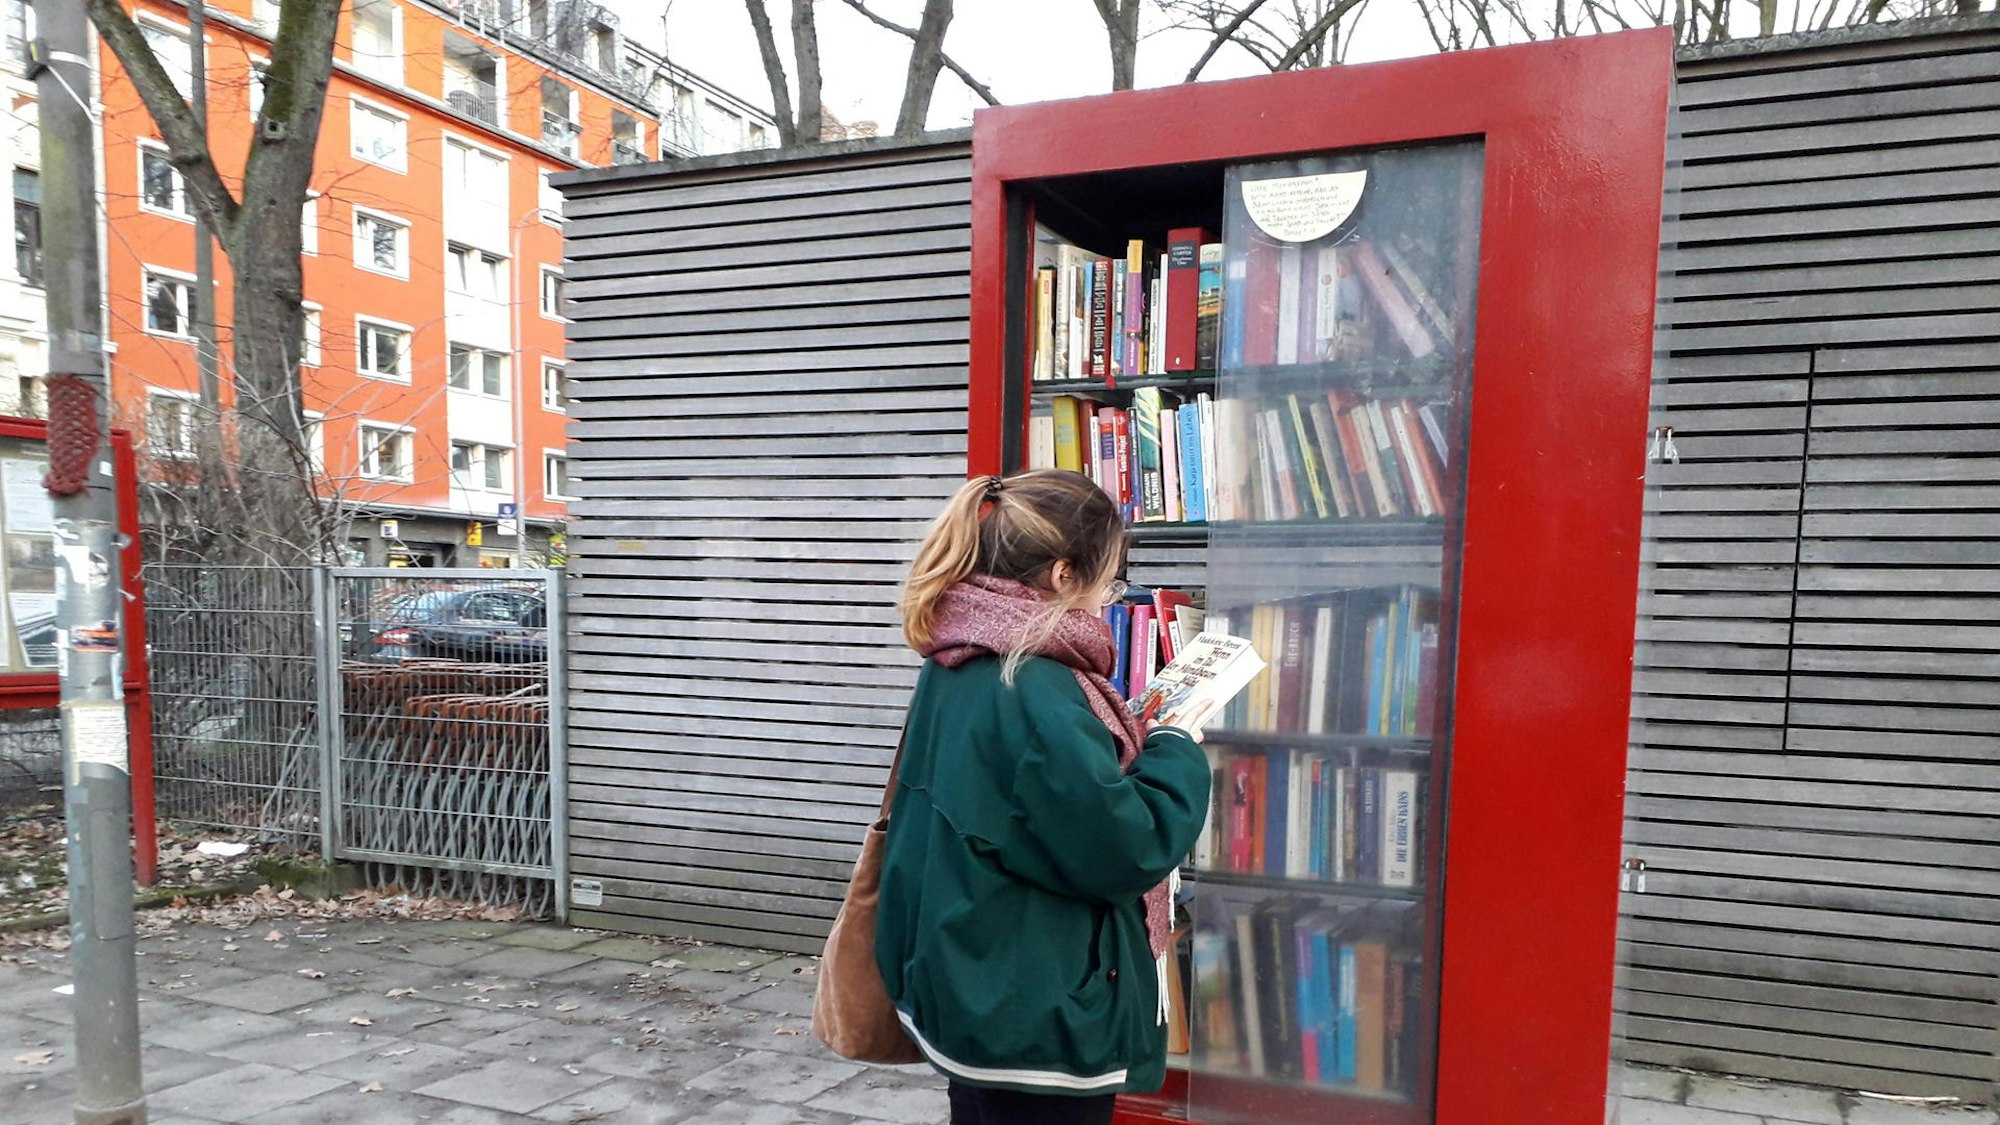 Bücherschrank in Köln am Rathenauplatz_Credit_Corinna Heyde